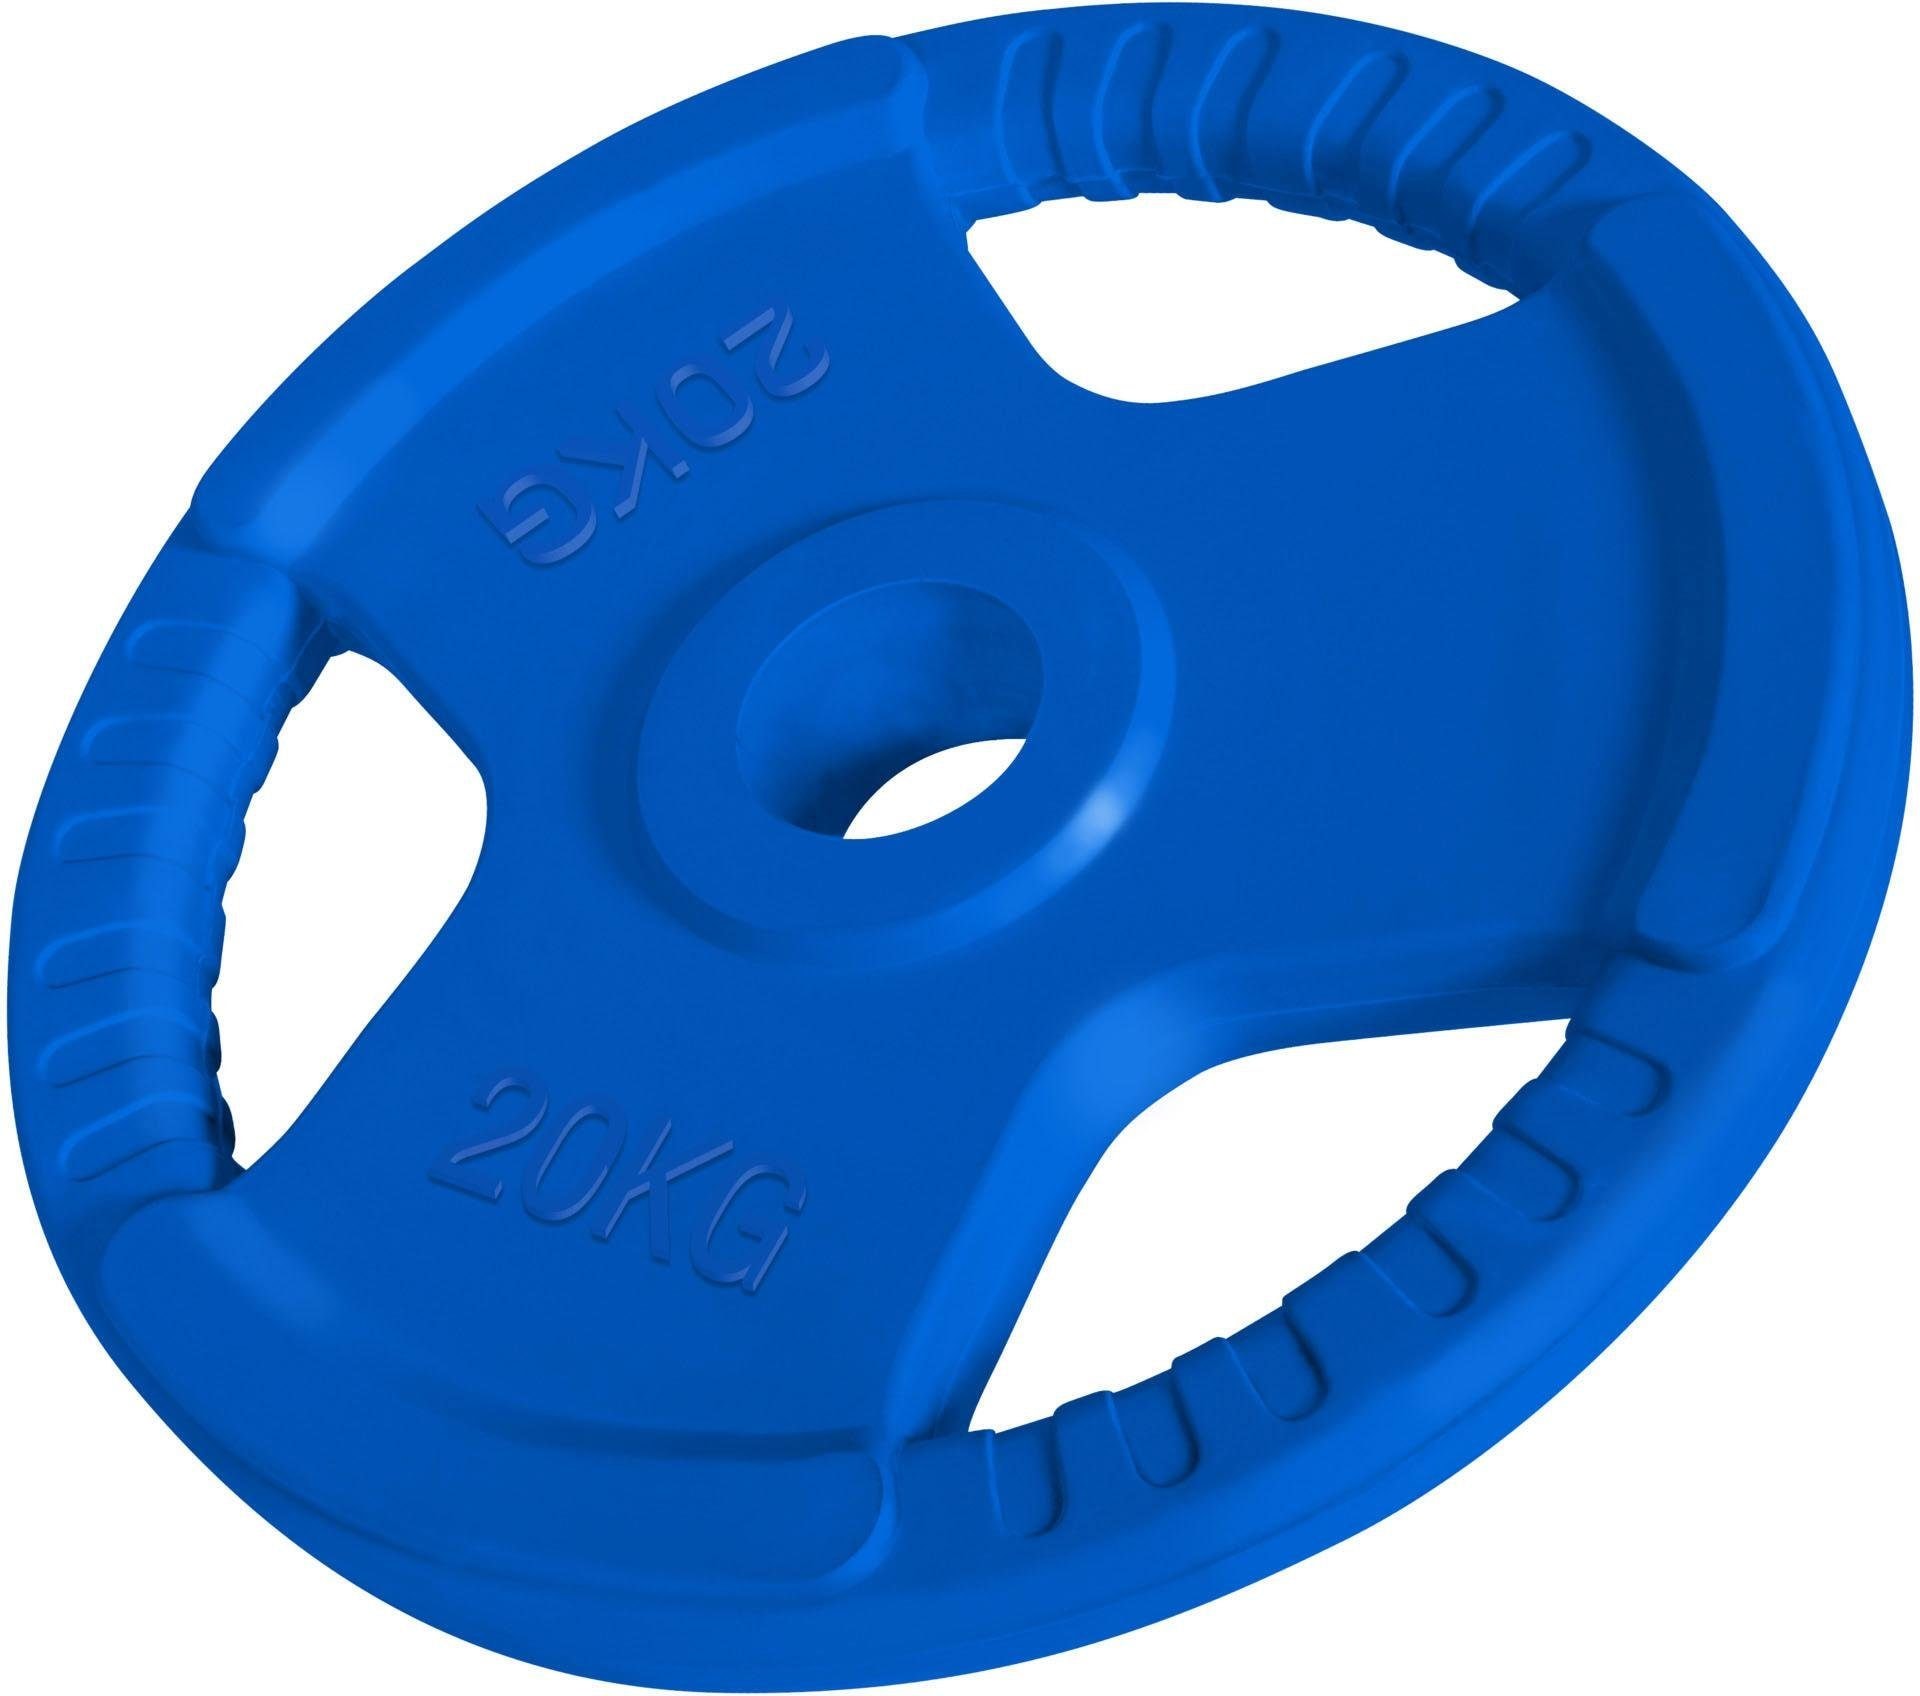 Hantelscheiben „Hantelscheibe 50/51 mm Gummi Gripper 20 kg“ blau 20 kg